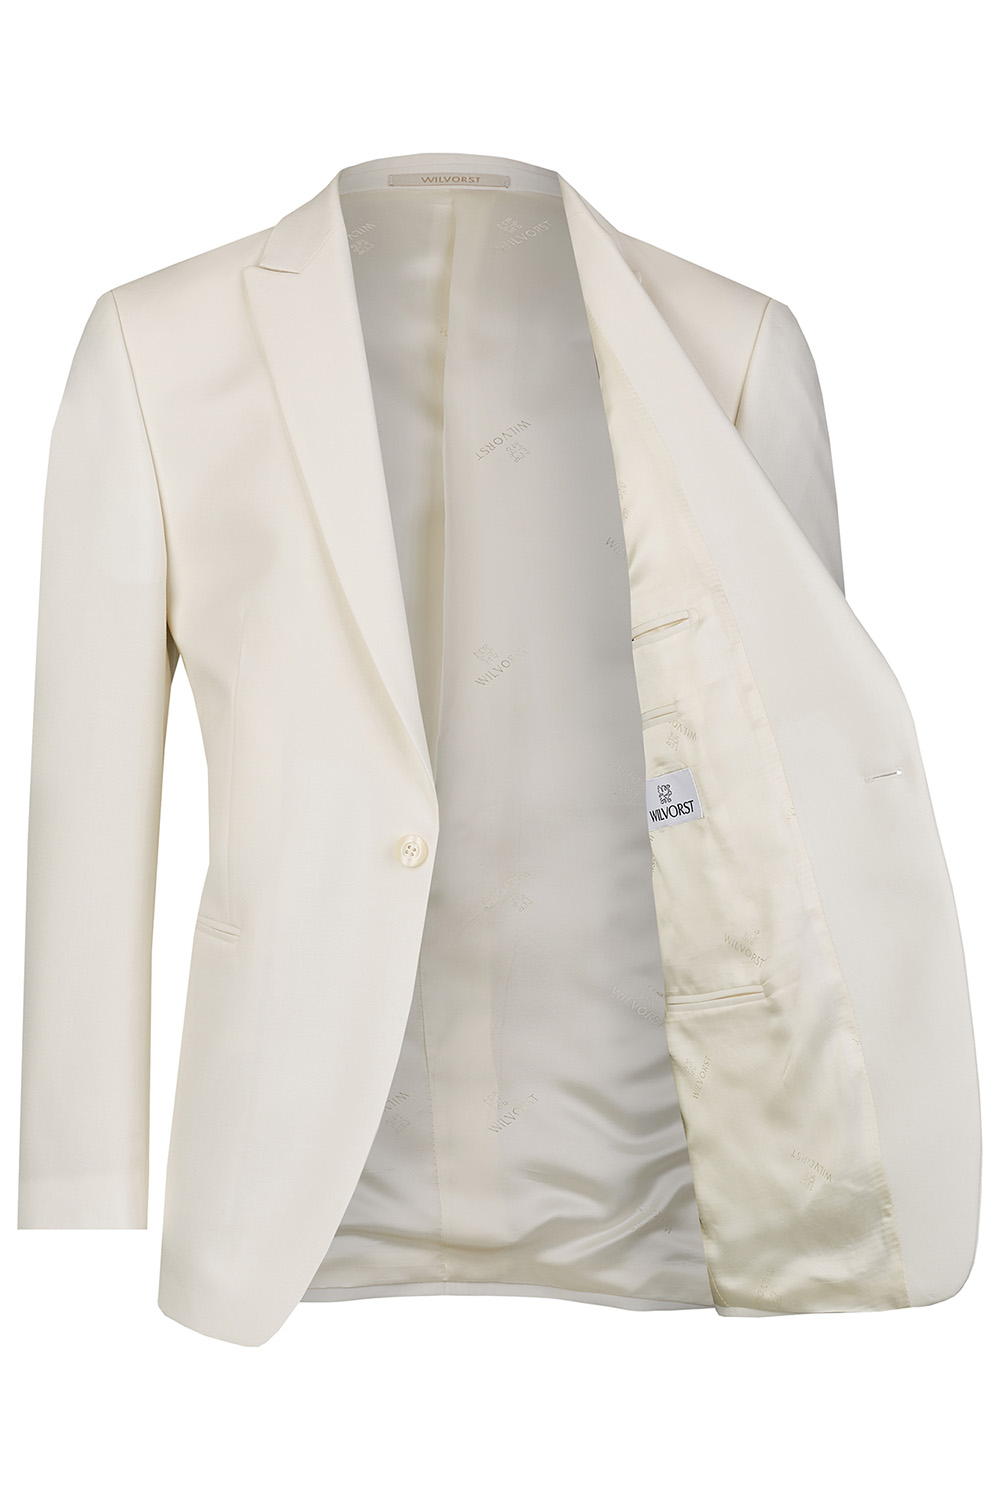 WILVORST fehér dinner jacket részletek 401824-1 Modell 17761-2